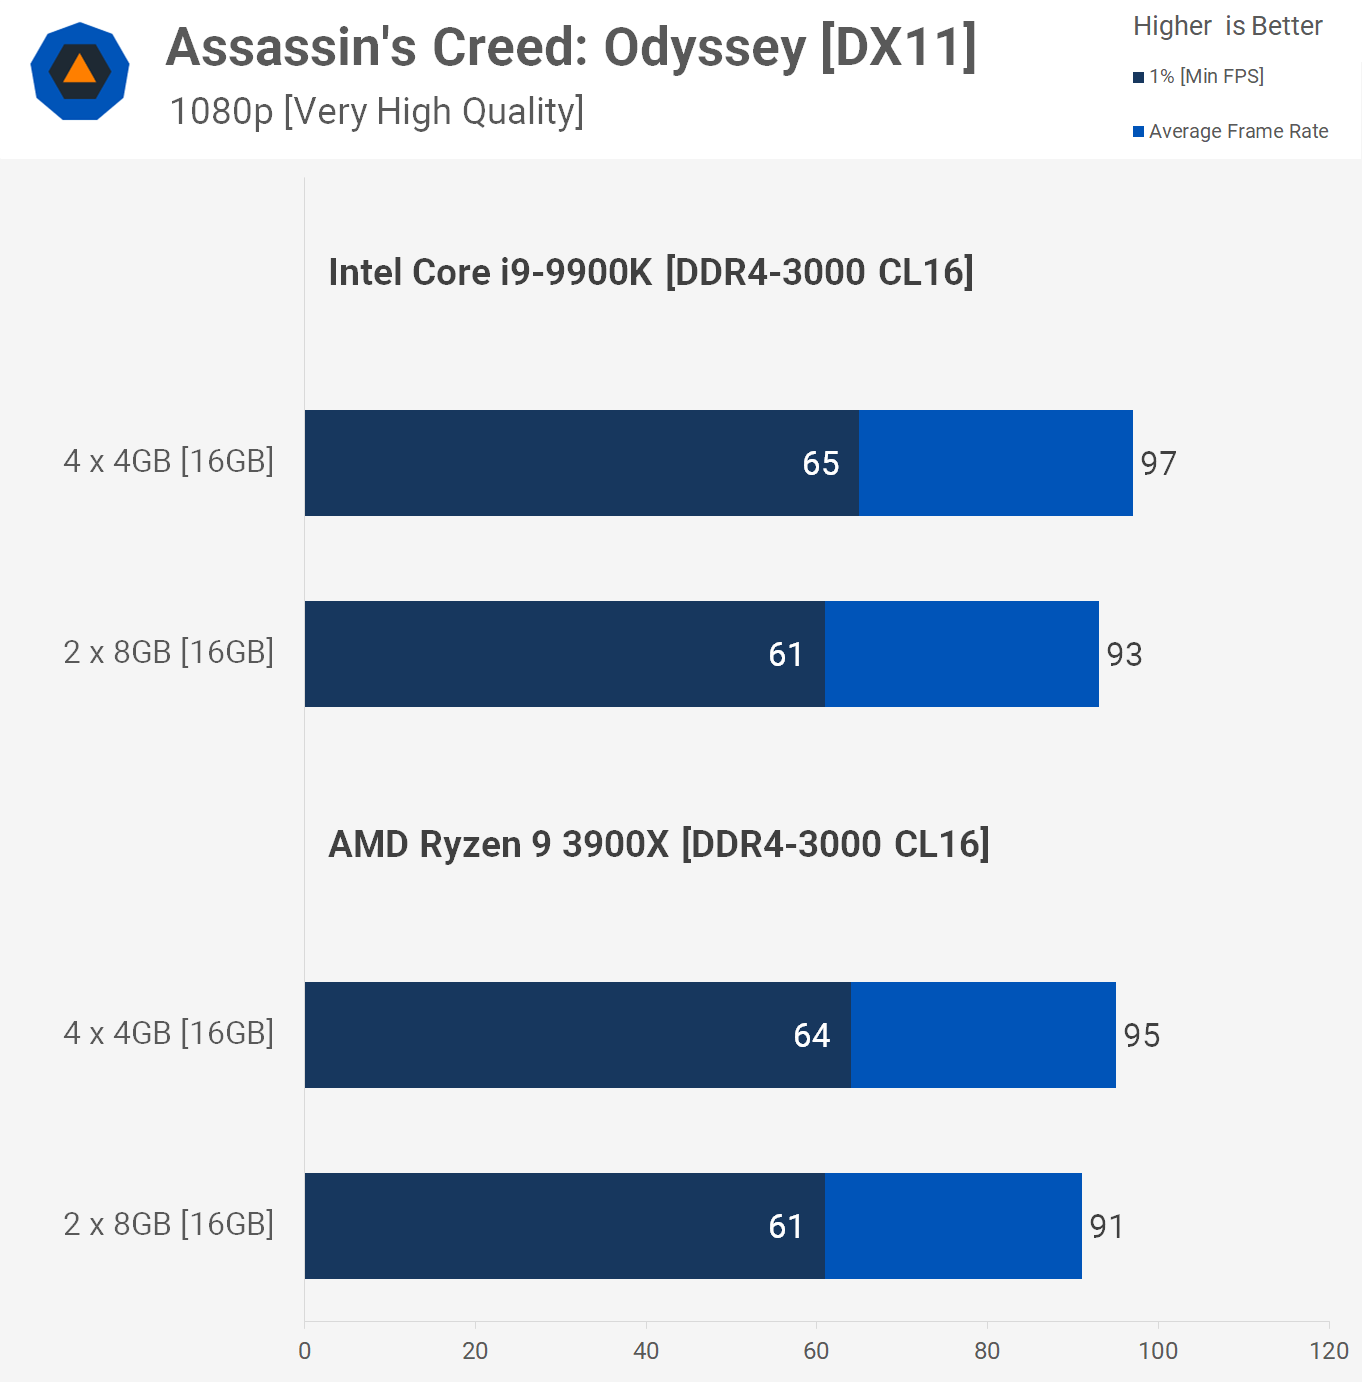 en lille Anerkendelse bestyrelse Are More RAM Modules Better for Gaming? 4 x 4GB vs. 2 x 8GB | TechSpot